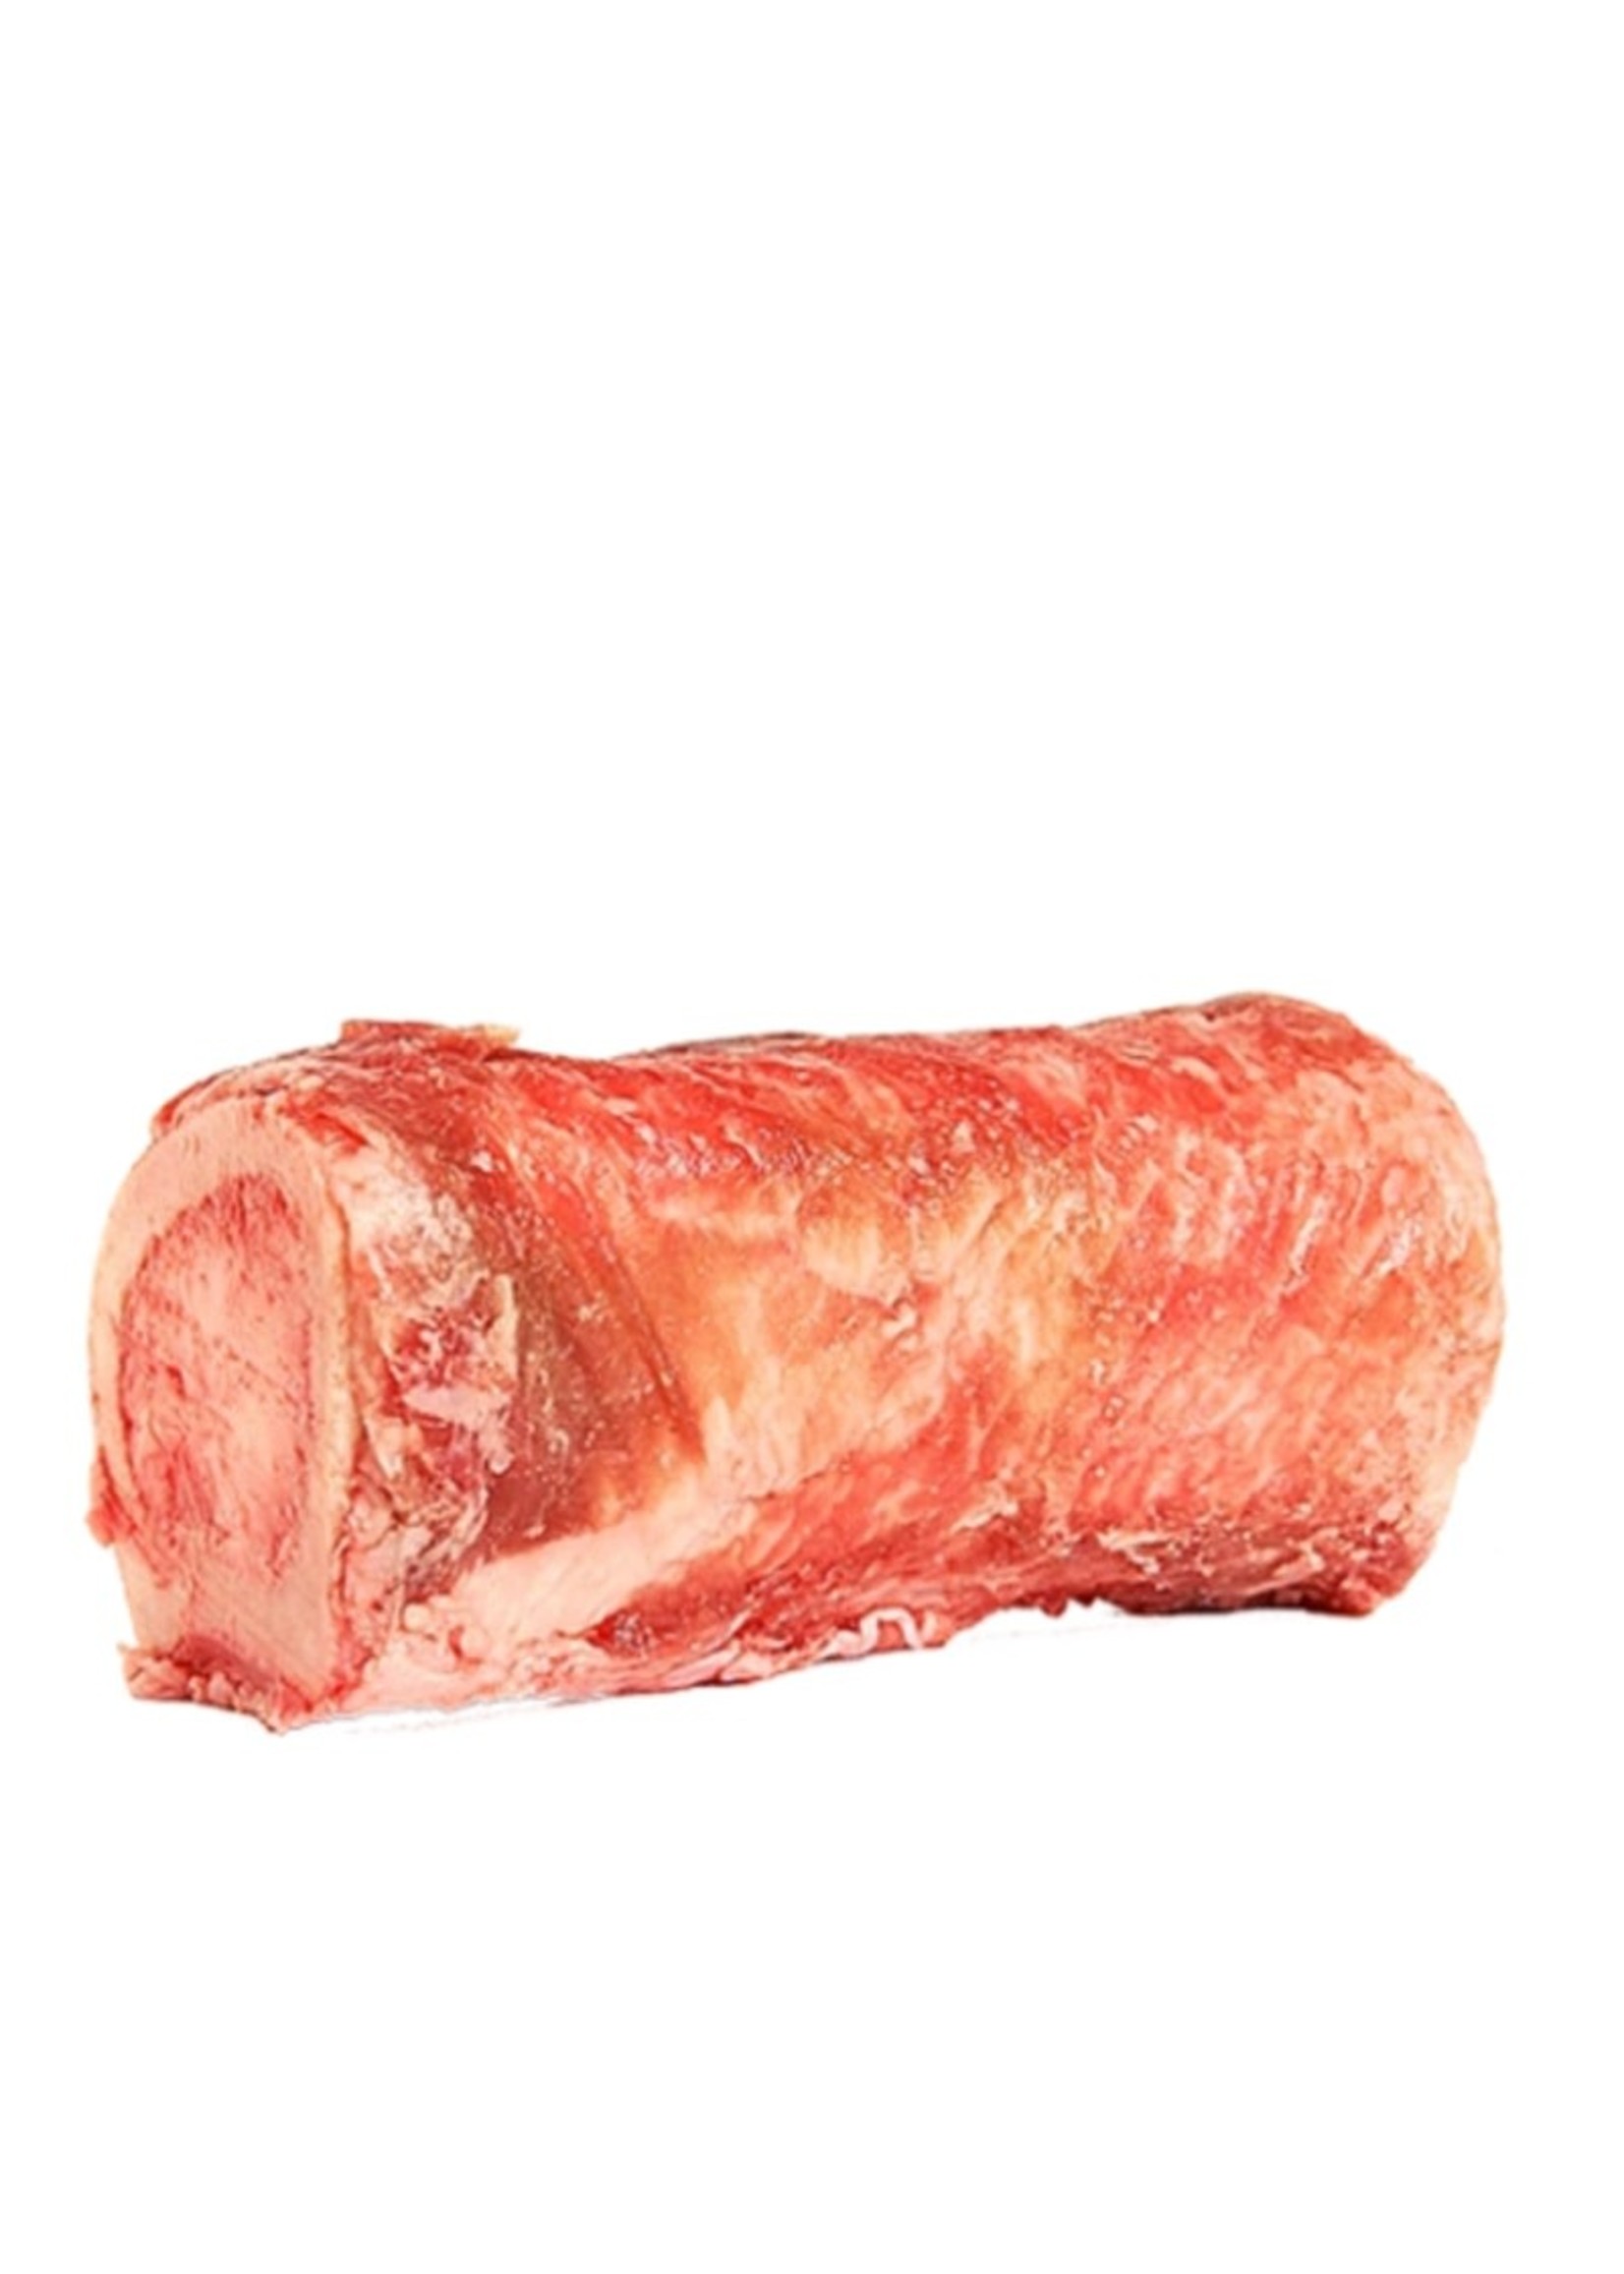 Primal Pet Foods Raw Beef Marrow Bone 1 Pack Large (Frozen)